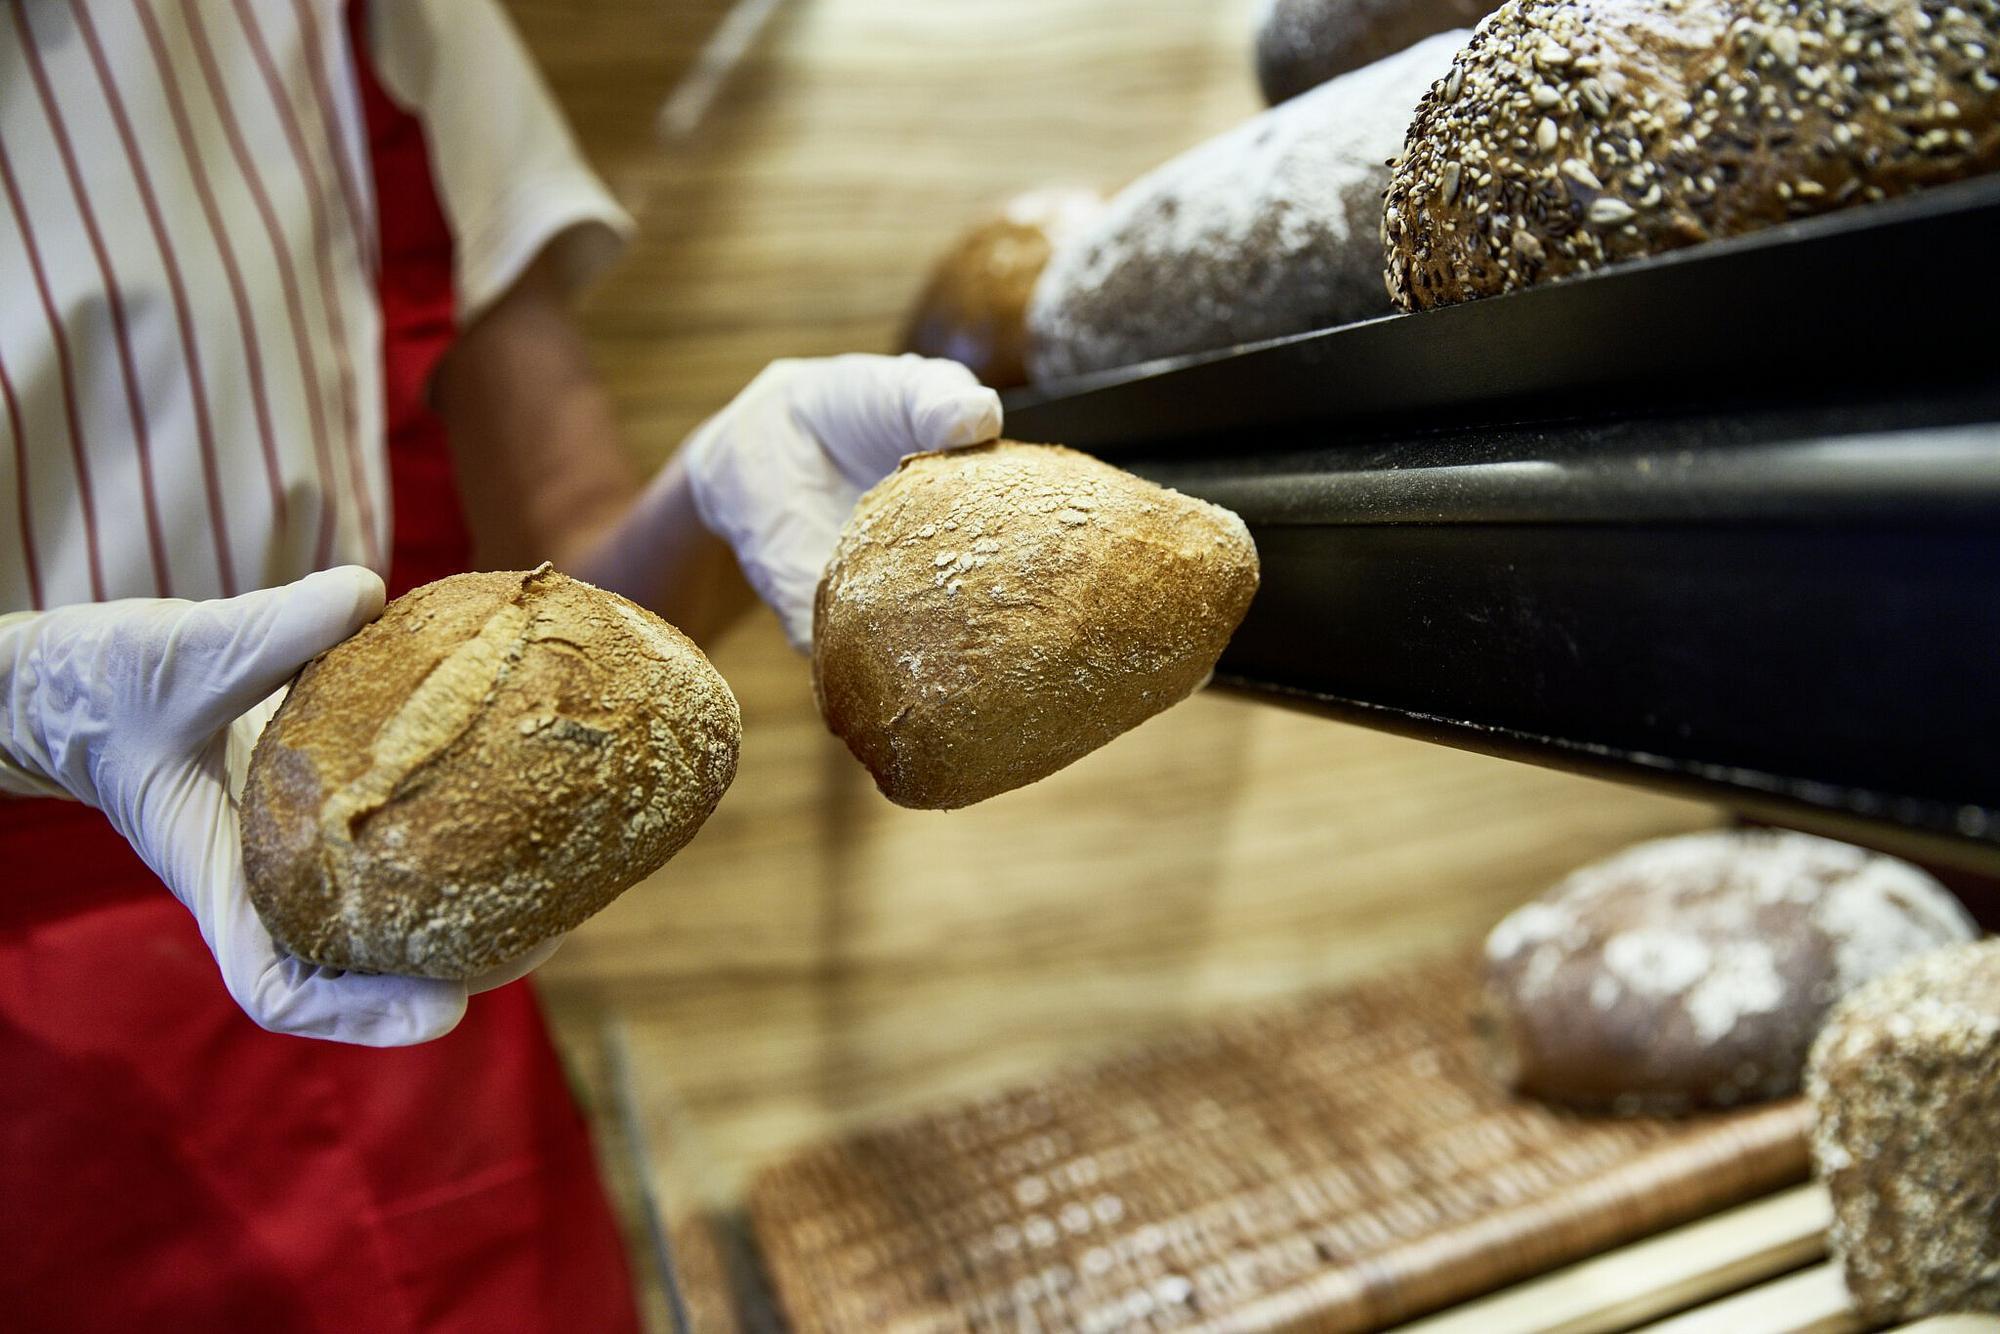 Bäckereivrekäuferin trägt Handschuhe beim Brötcheneinpacken